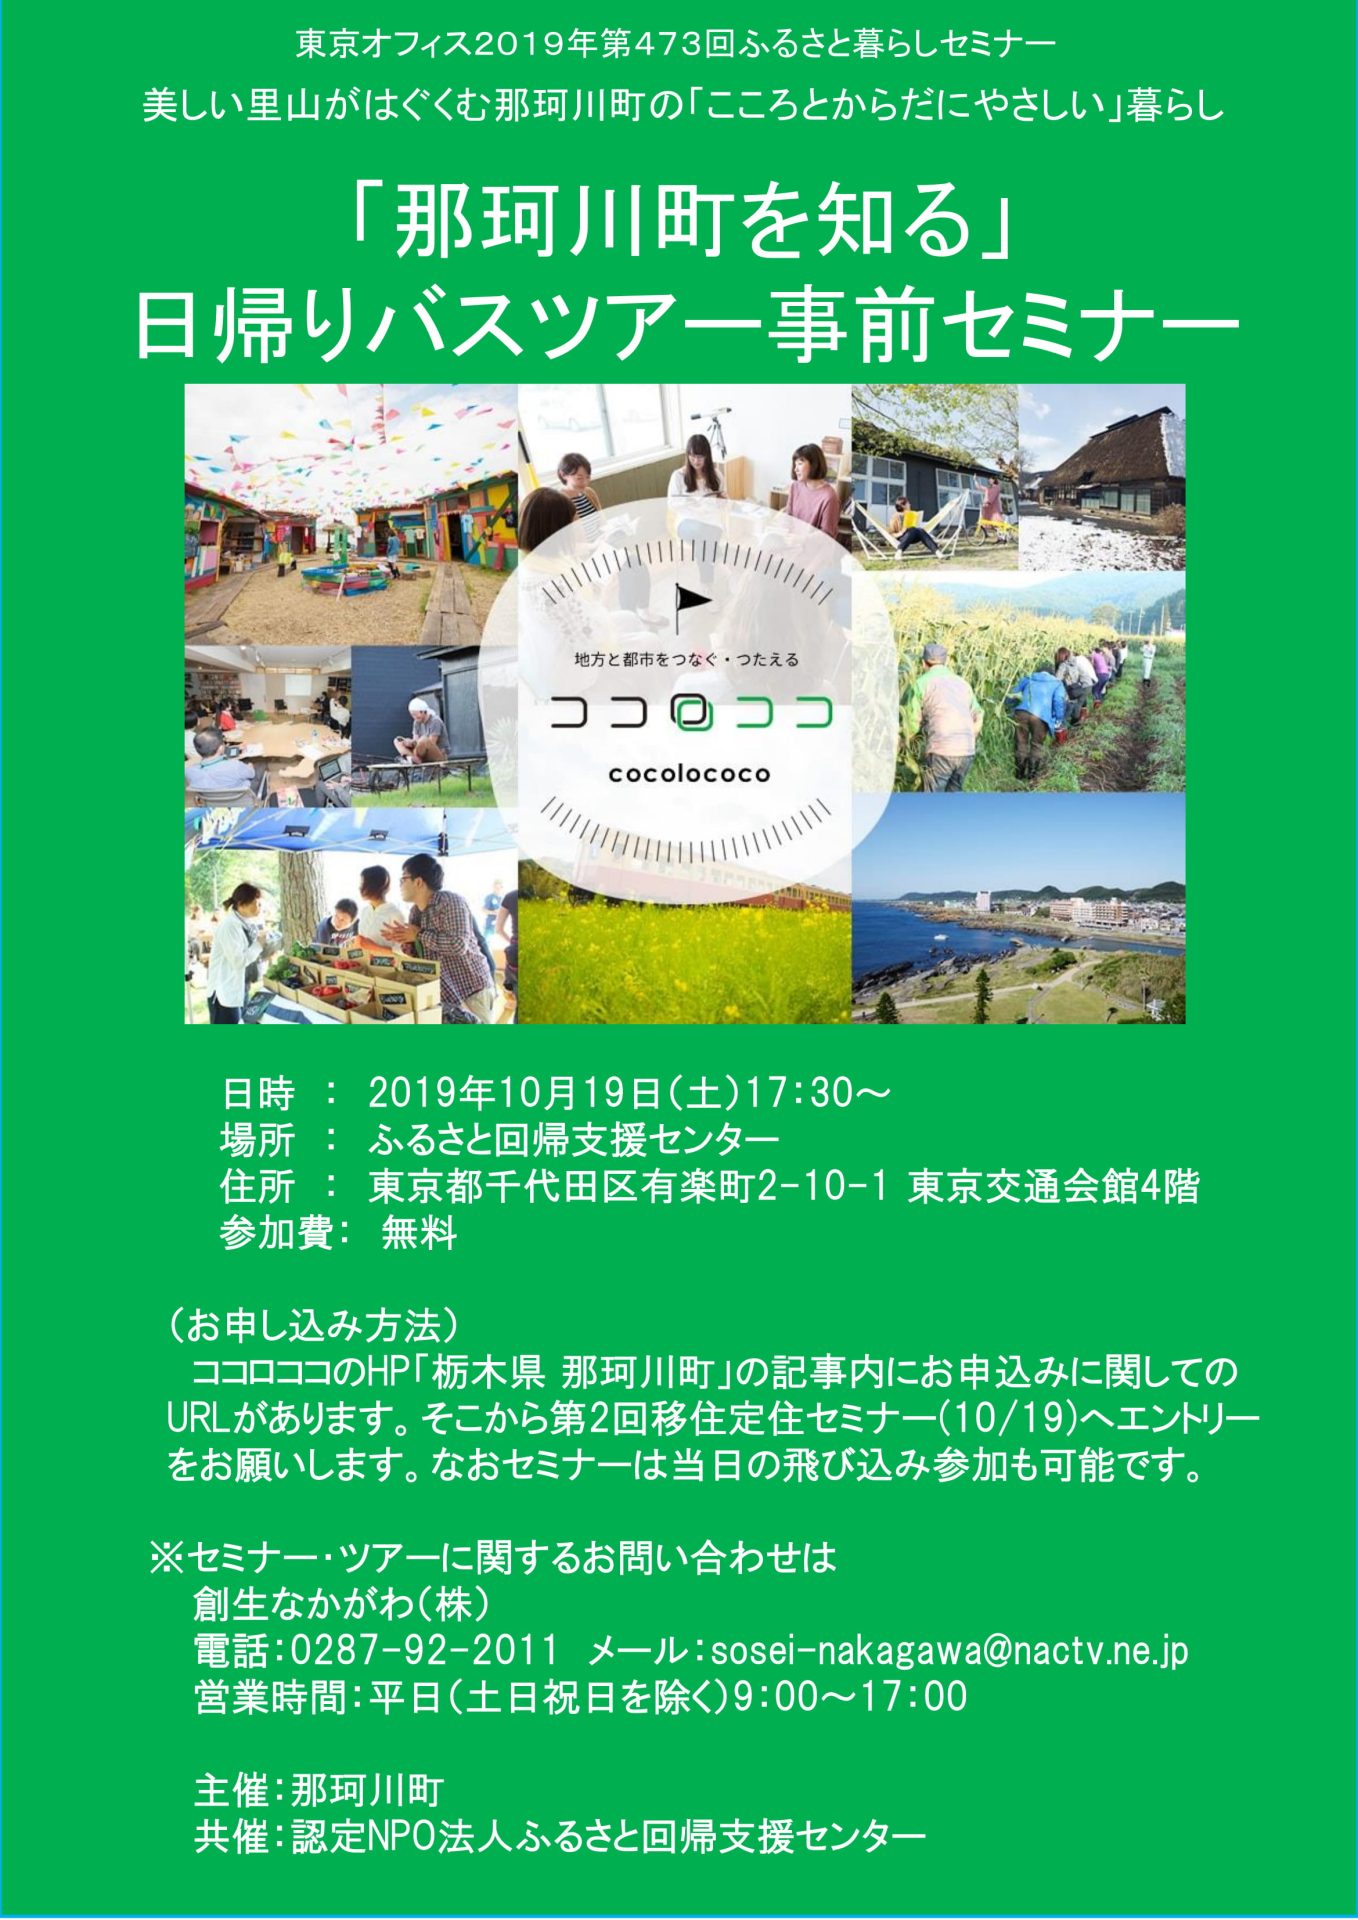 「那珂川町を知る」日帰りバスツアー事前セミナー | 移住関連イベント情報